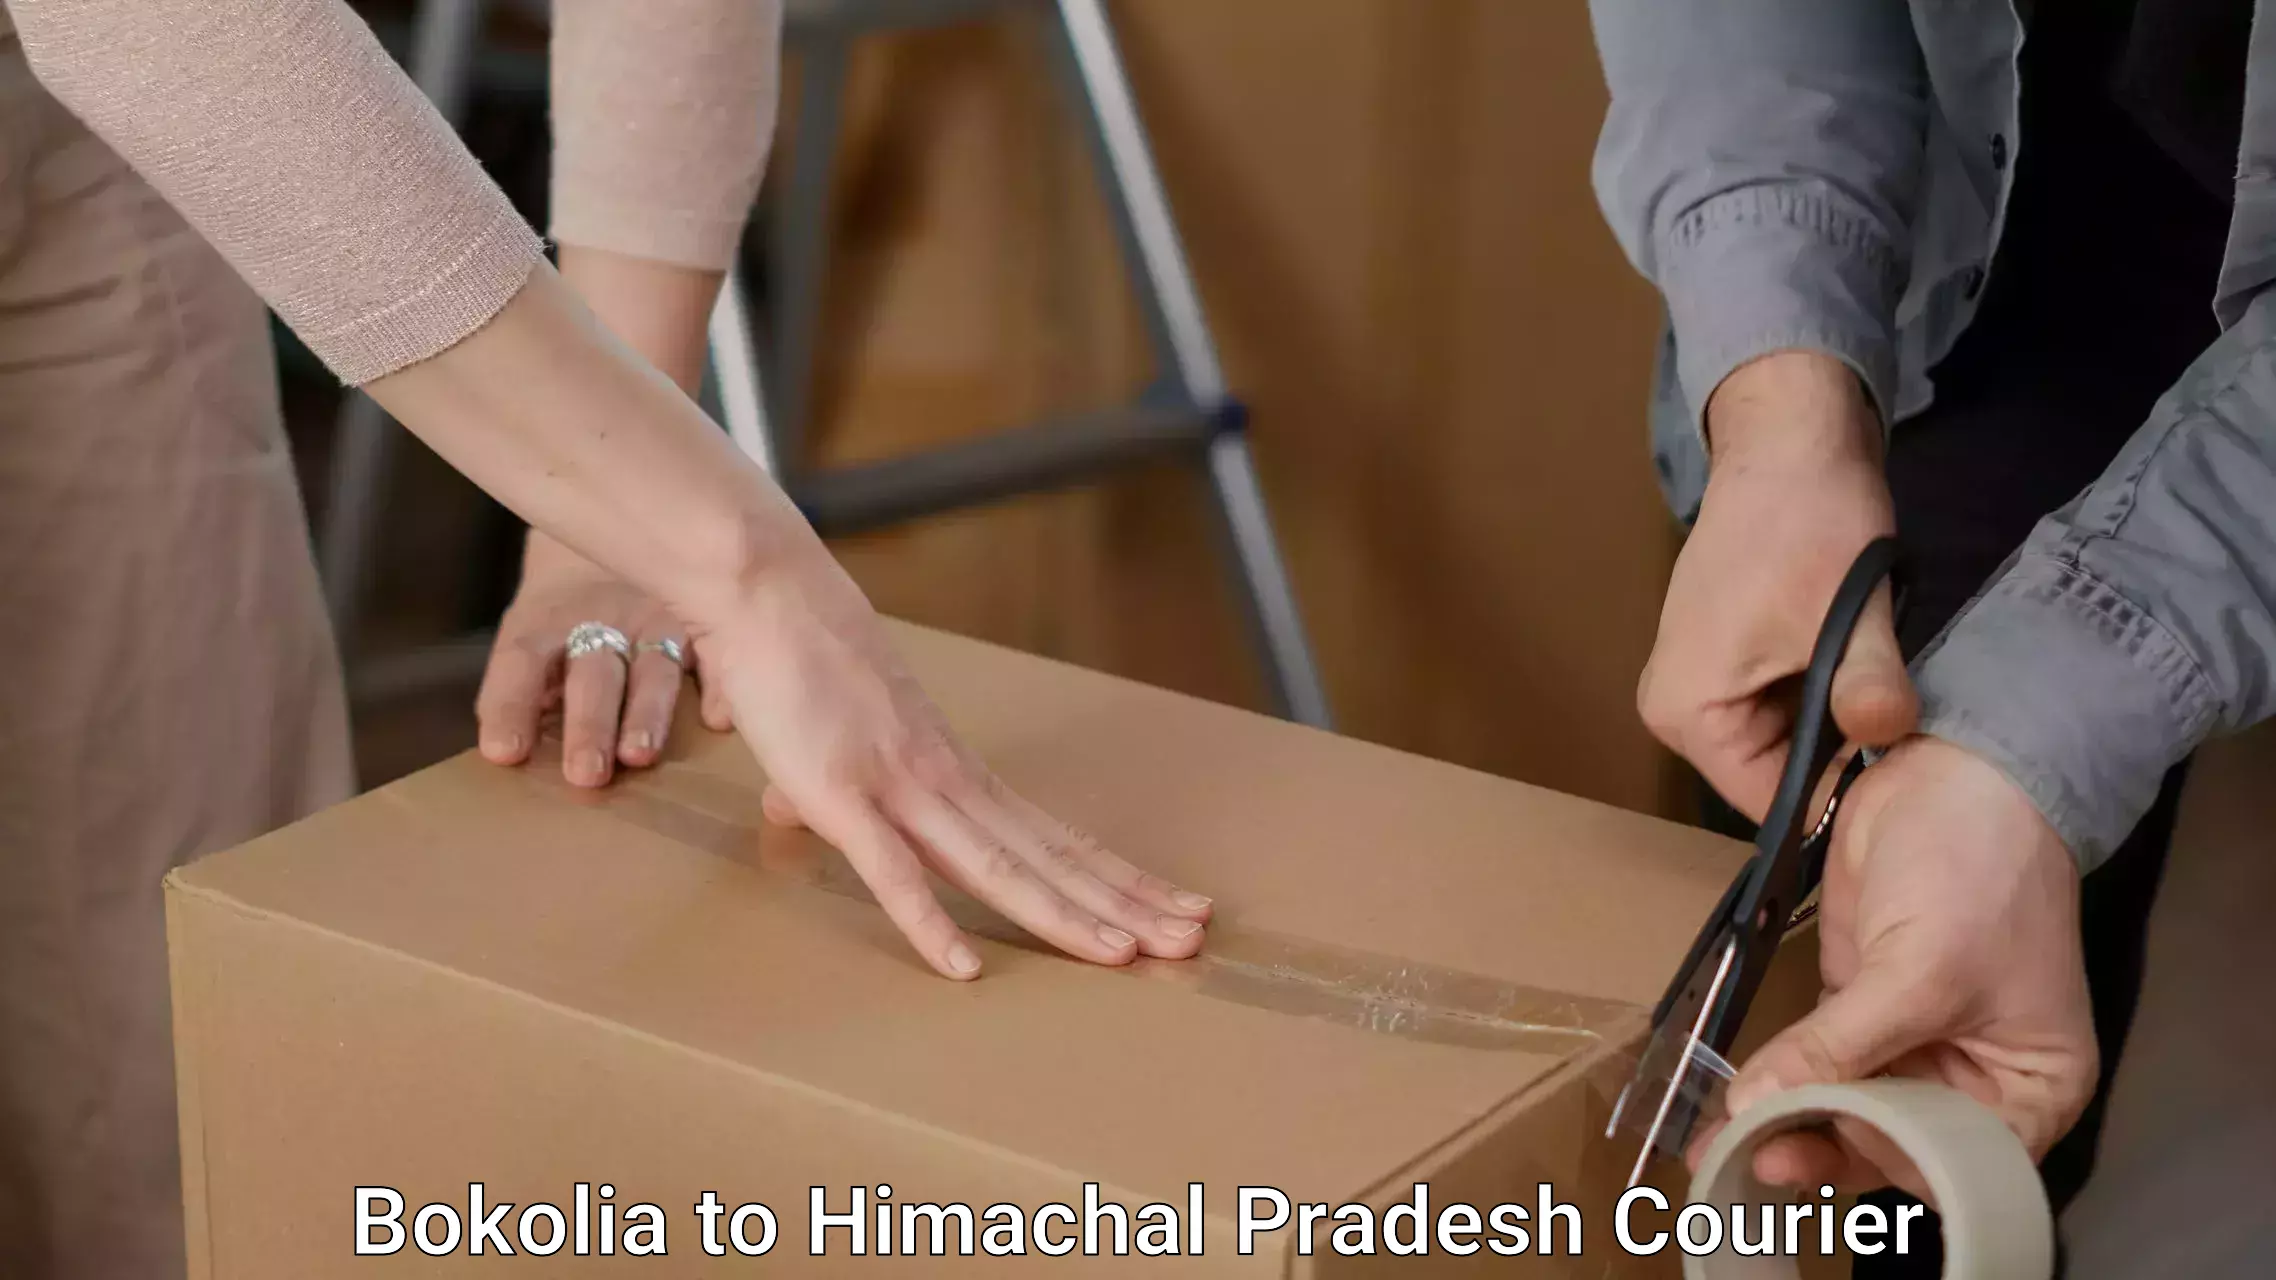 Furniture moving and handling Bokolia to Himachal Pradesh